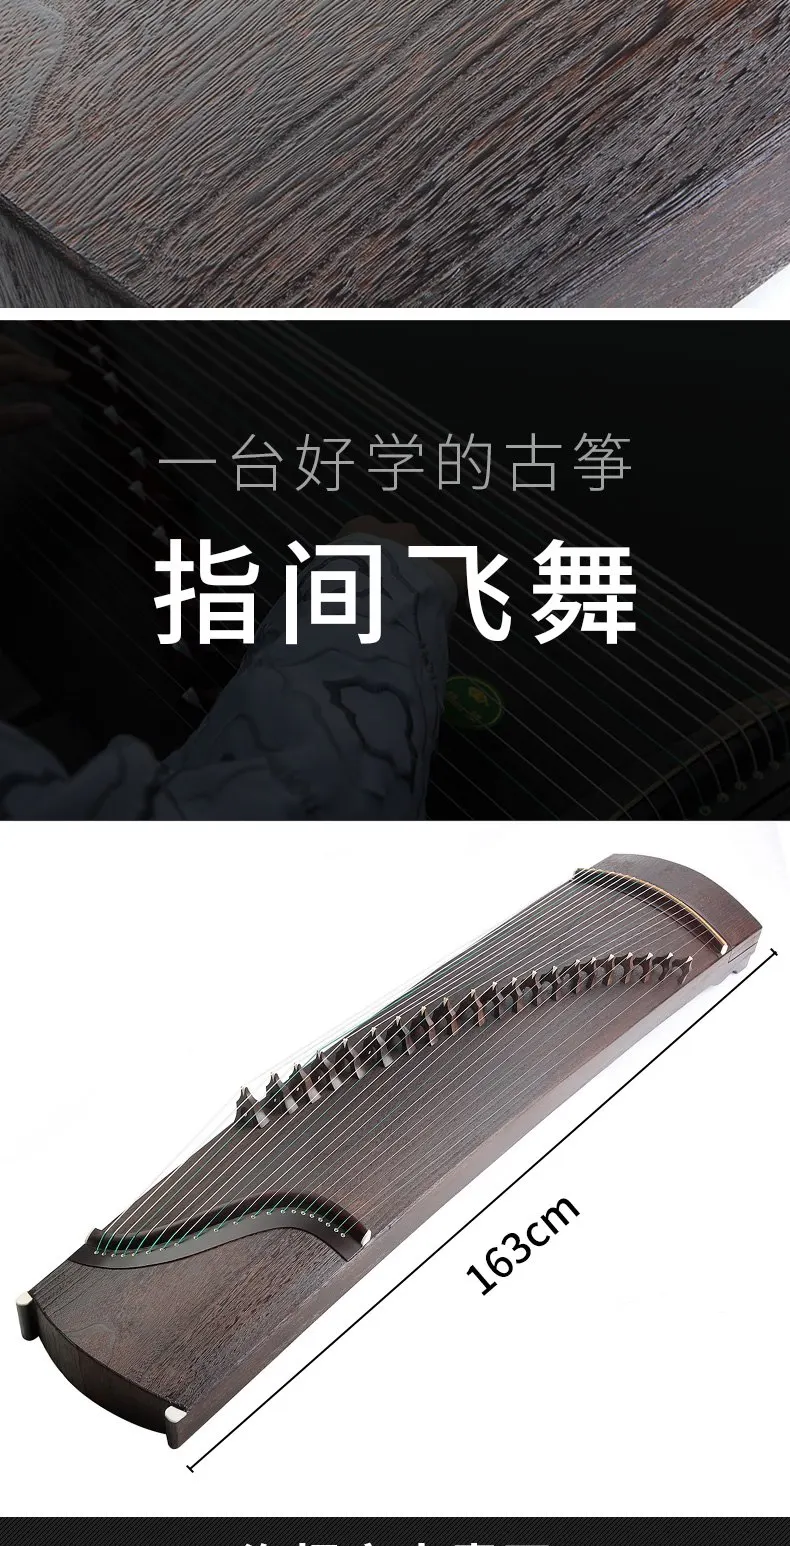 Профессиональный 21 струнный китайский zither первого класса паулуния guzheng профессиональные копки вставки solidwood Gu zheng zither